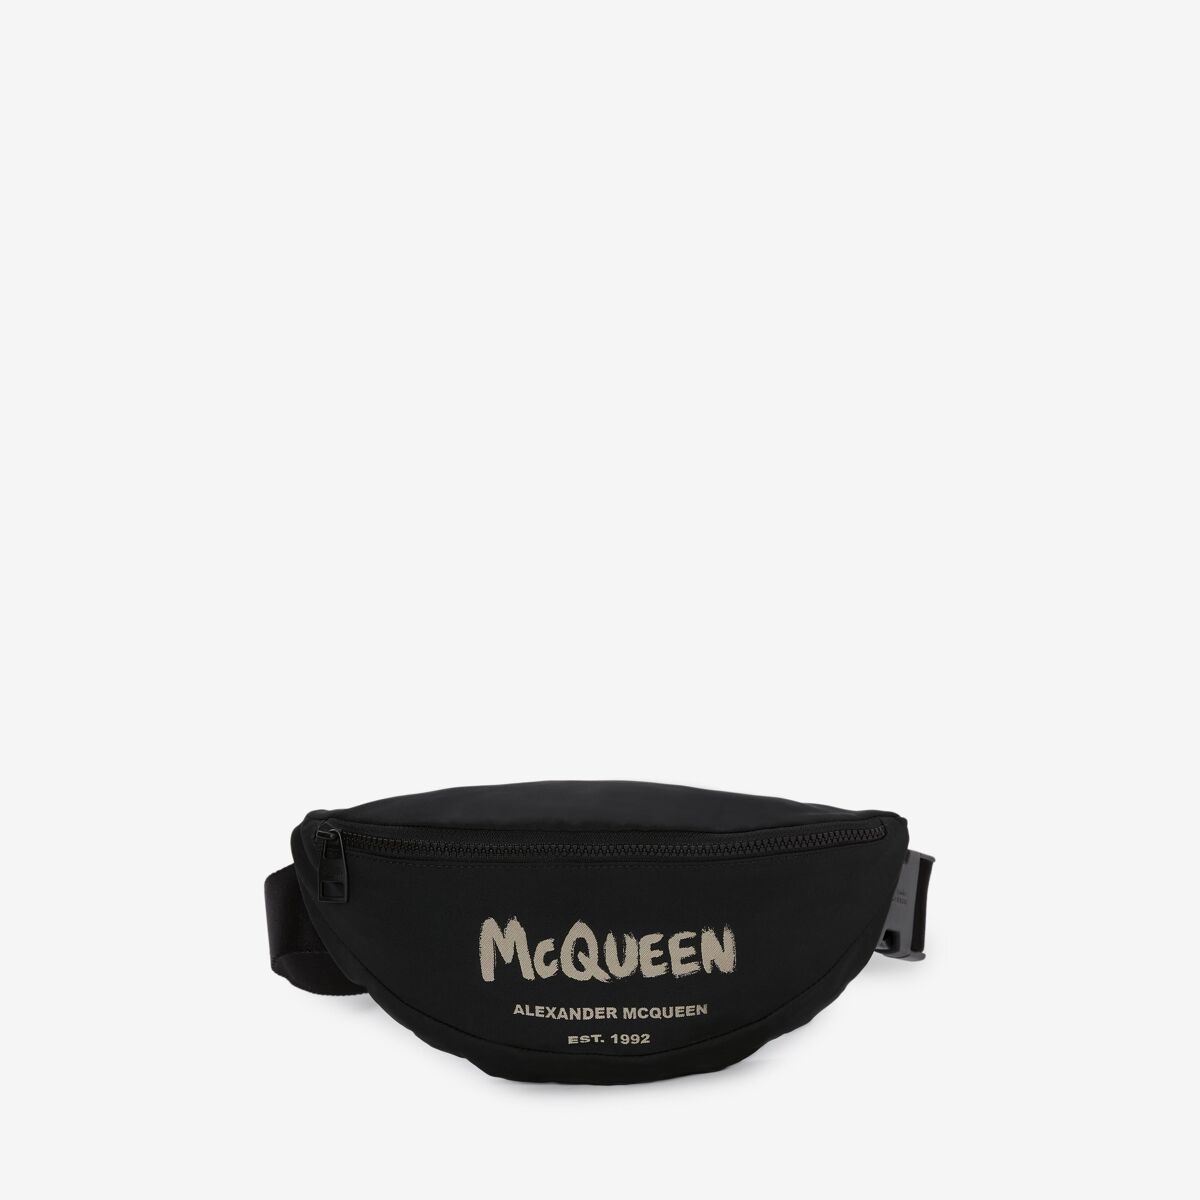 ALEXANDER MCQUEEN McQueen Graffiti Belt Bag